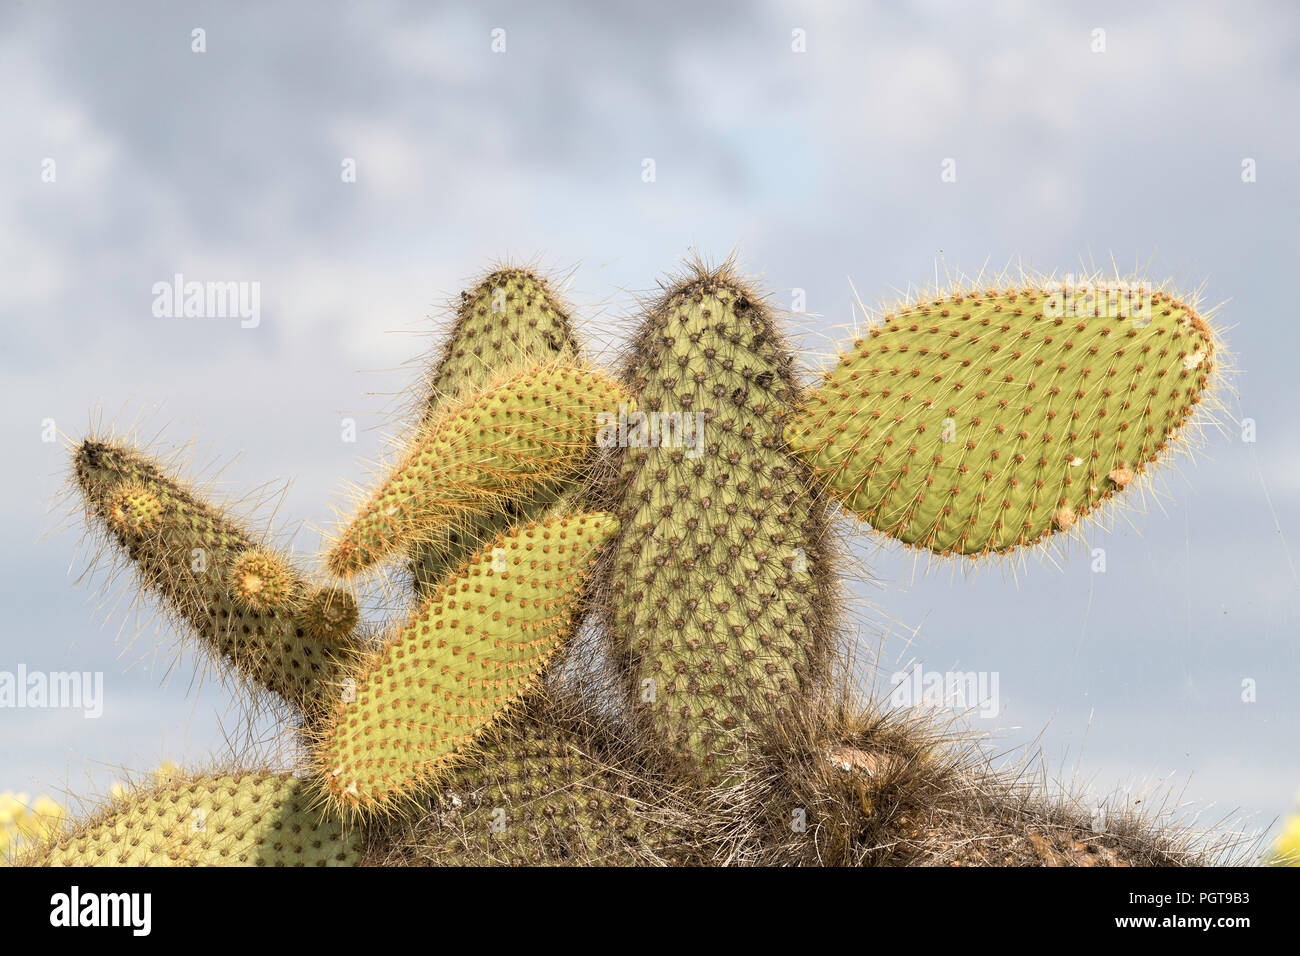 The endemic Opuntia cactus, Opuntia echios, growing on Santa Cruz Island, Galápagos, Ecuador. Stock Photo